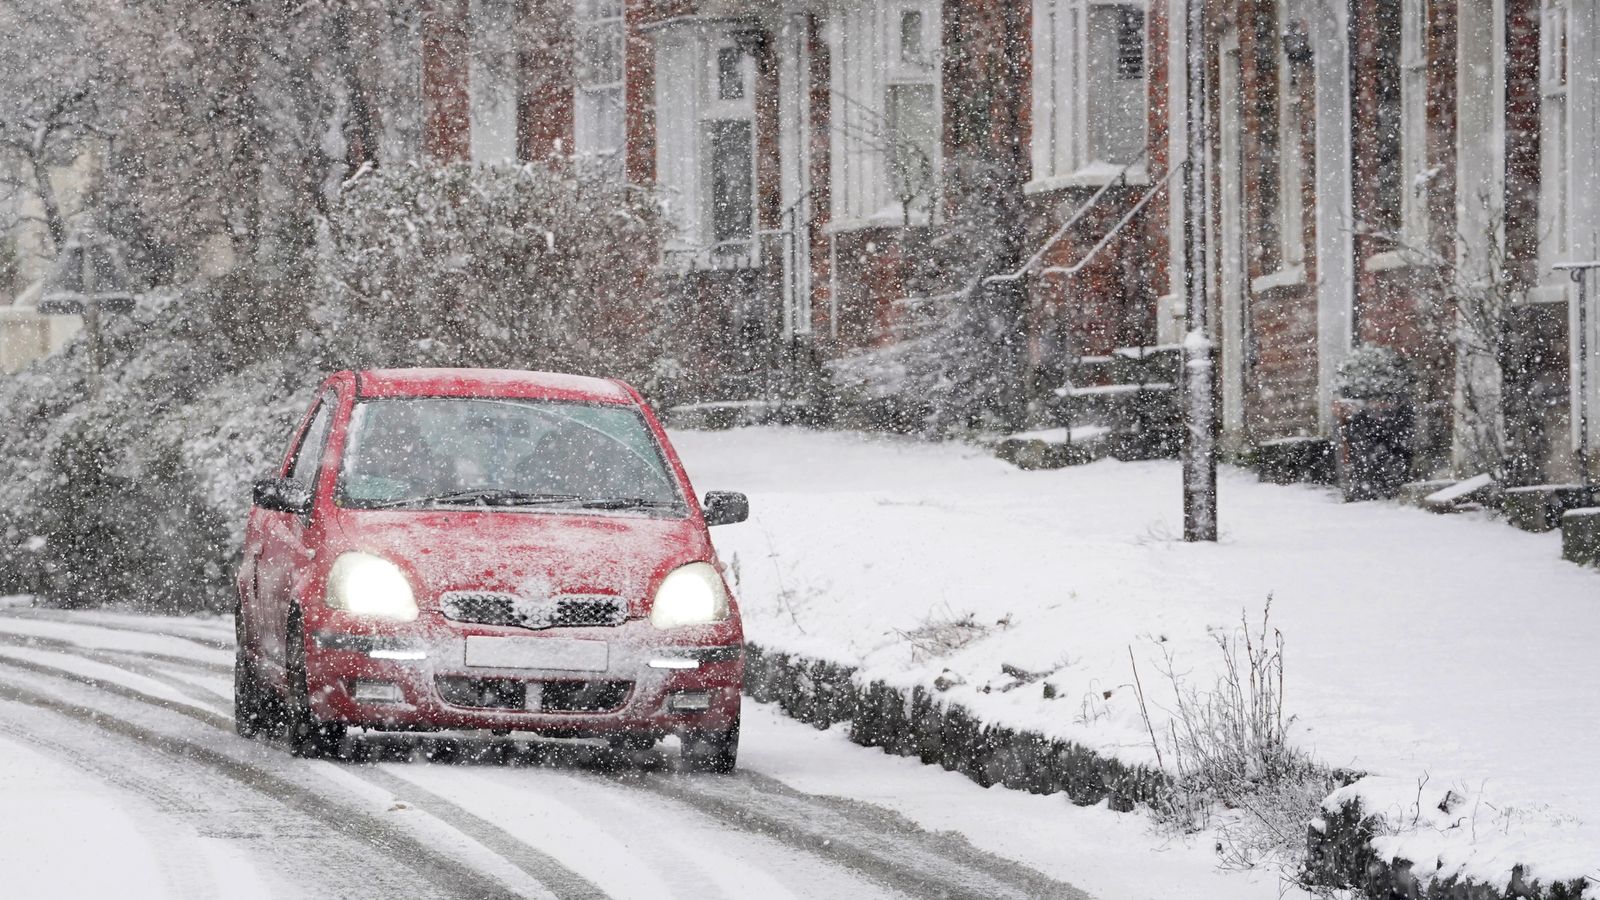 Времето в Обединеното кралство: предупреждение за „тежки“ условия по пътищата поради минусови температури и прогноза за сняг